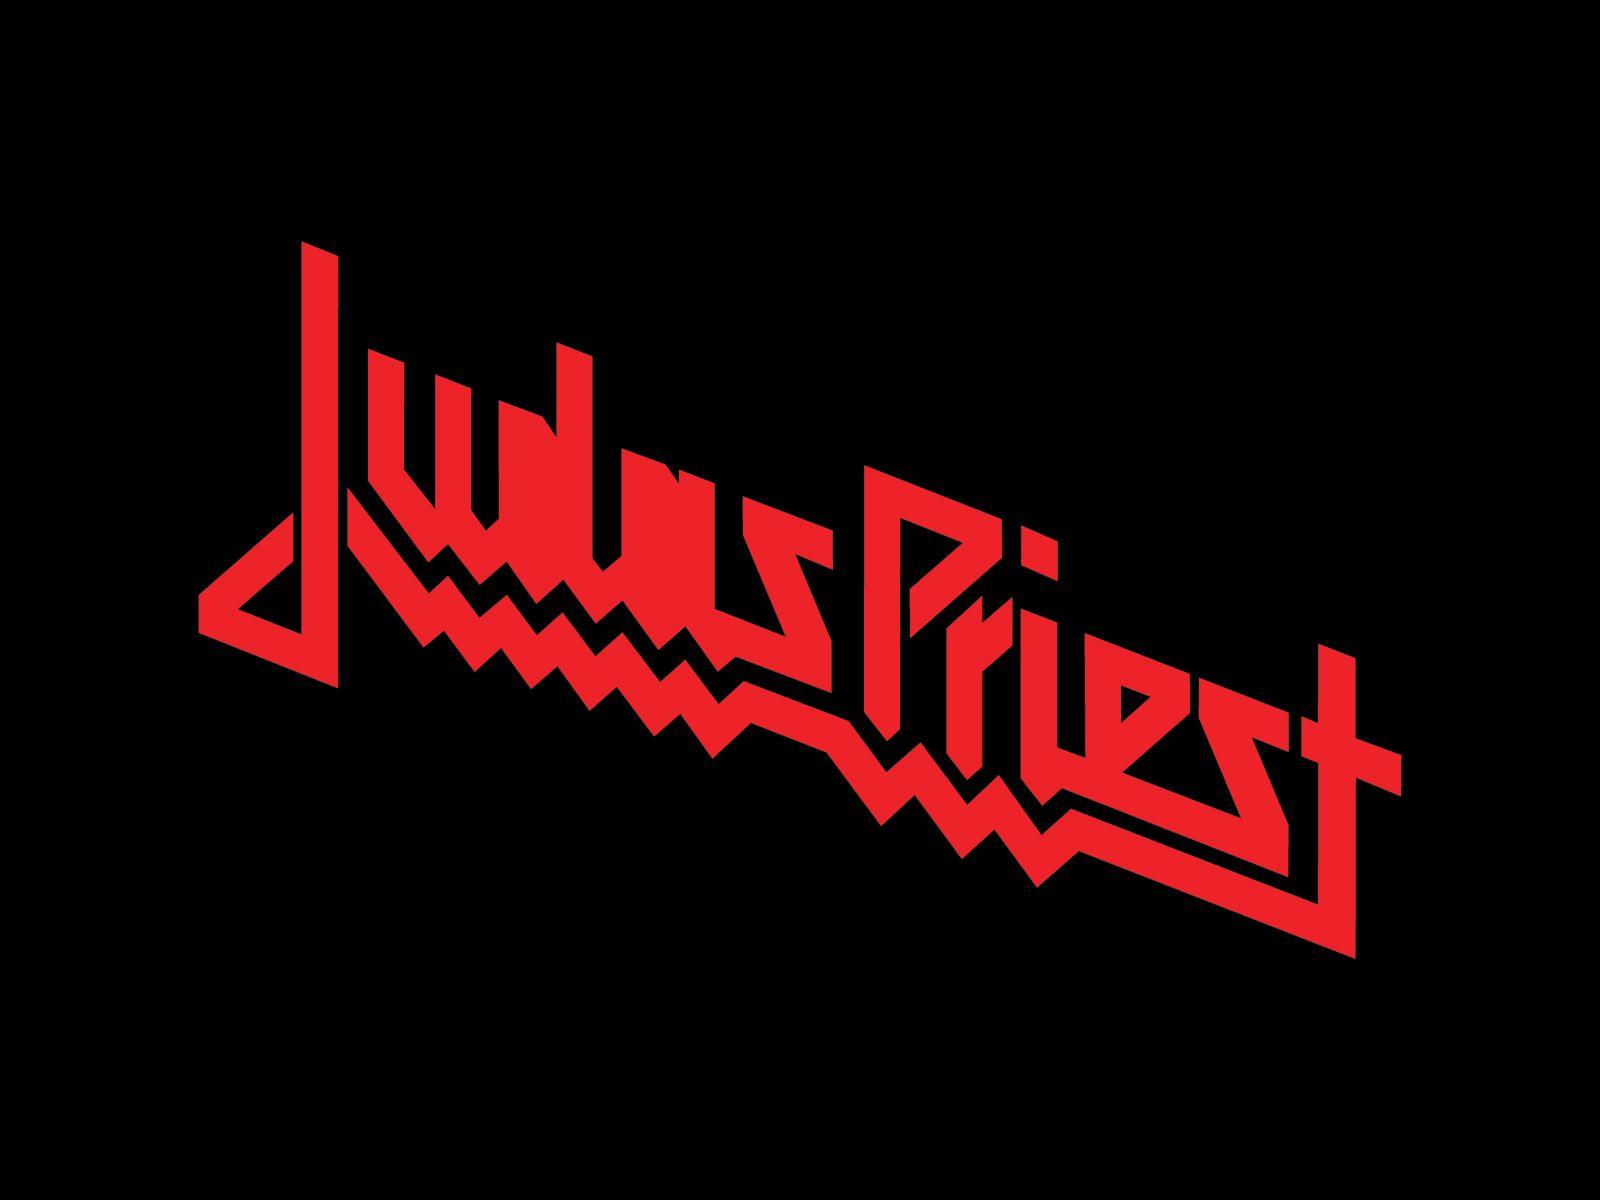 Judas Priest Band Logo - Judas Priest | Design - Logo - Bands in 2019 | Judas Priest, 80s ...